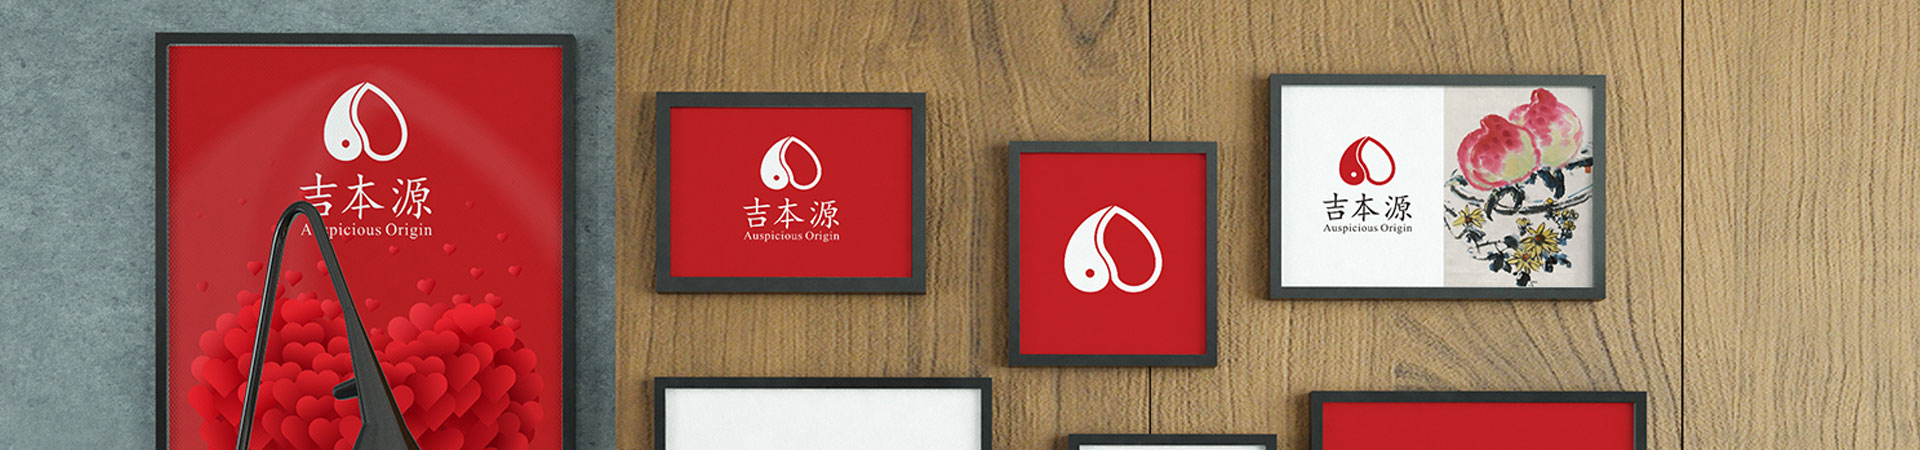 深圳商標設計,品牌logo設計,企業標志設計公司